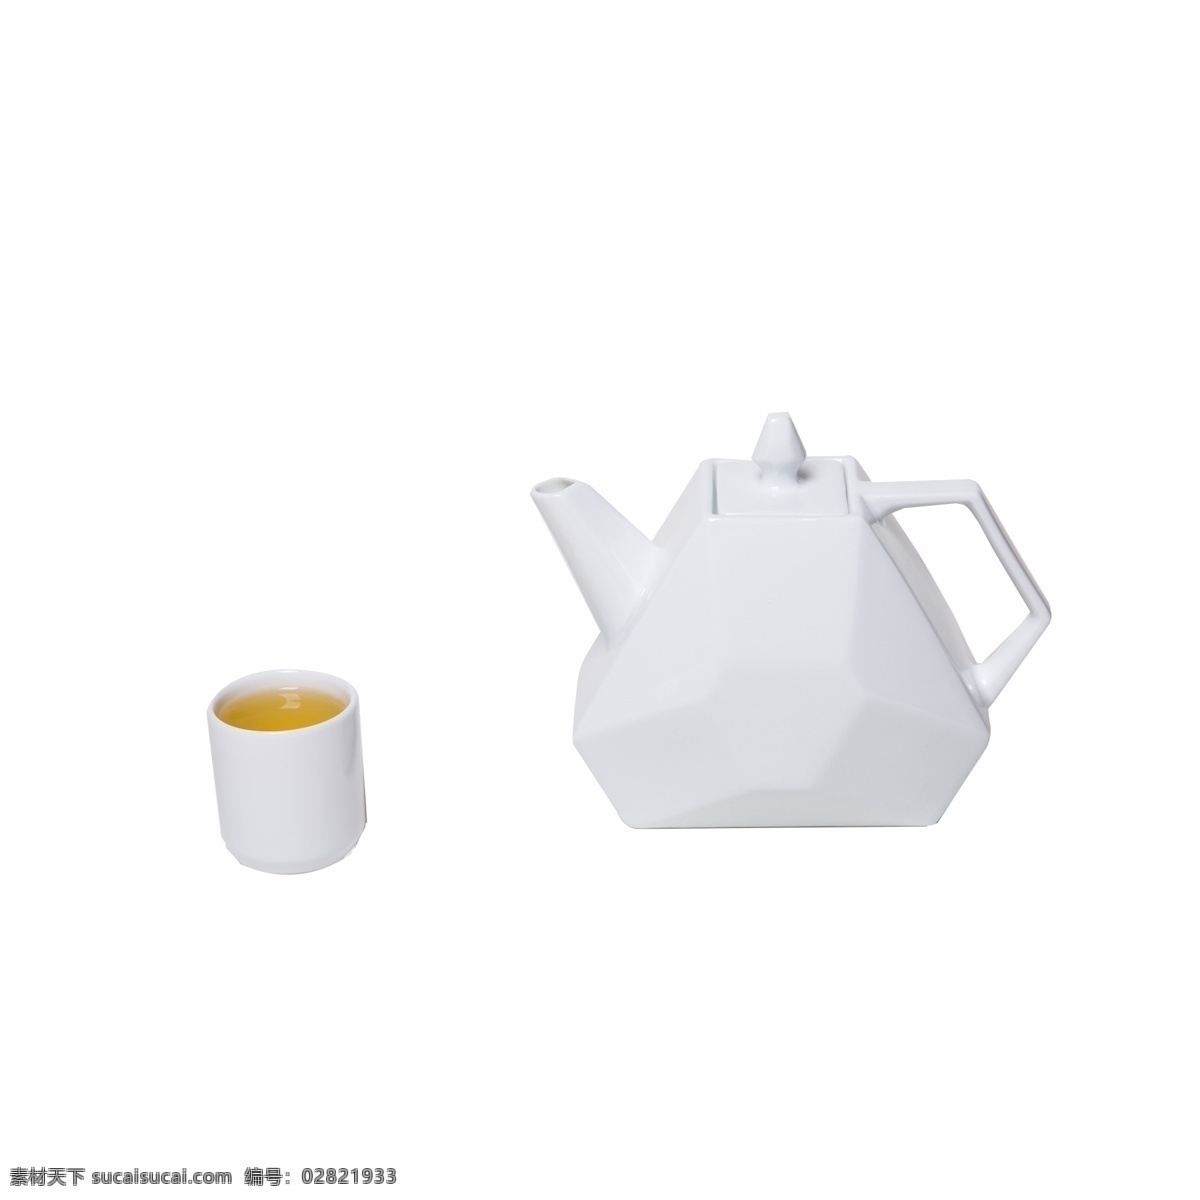 纯 白色 水壶 茶杯 实拍 免 抠 陶瓷 容器 套装 陶瓷杯 茶叶 茶水 杯子 简约 简洁 纯白色 喝茶 养生 瓷器